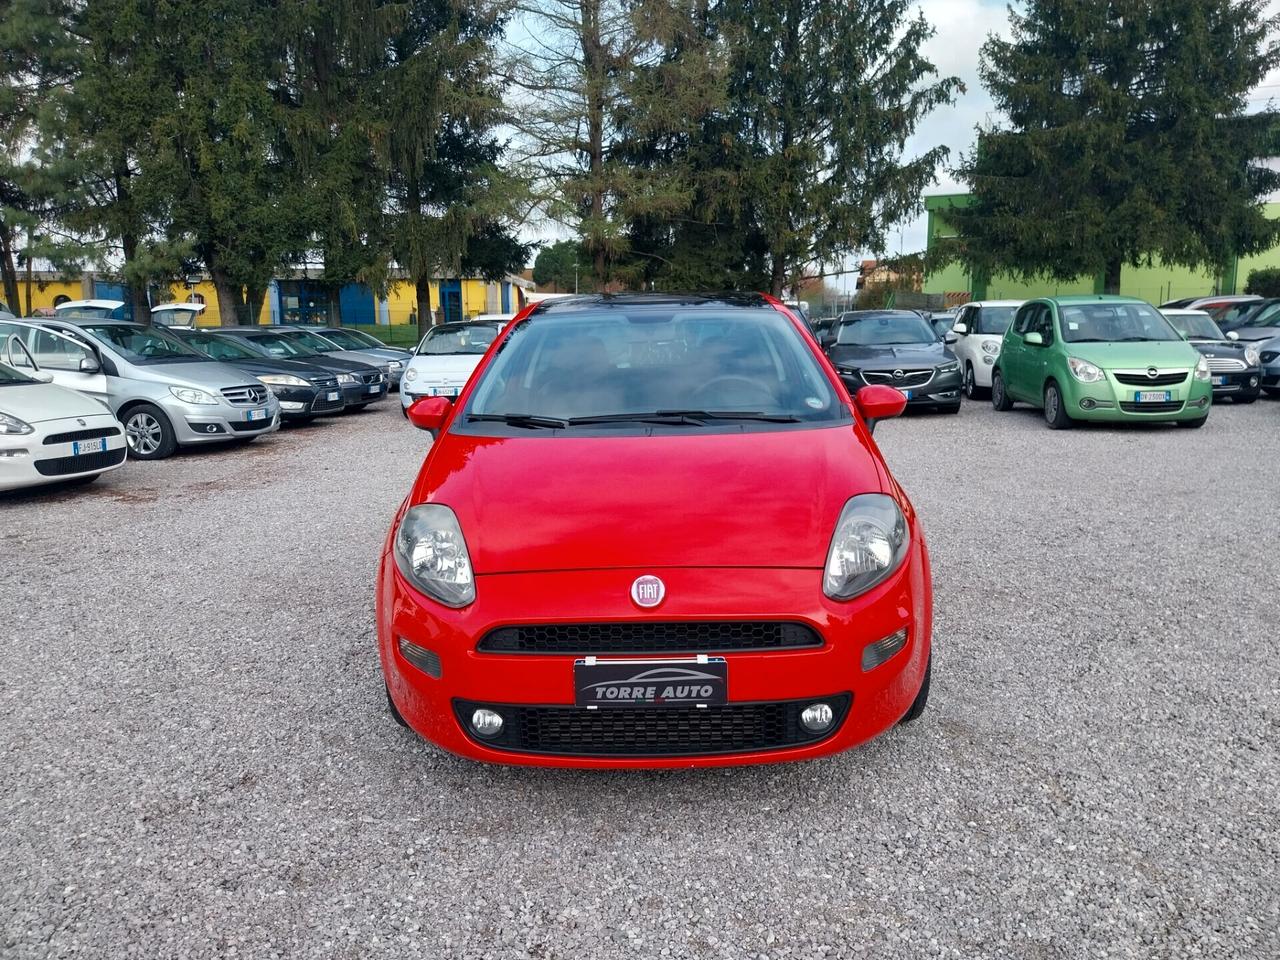 Fiat Punto 1.4 MULTIAIR TURBO SES 3P SPORT